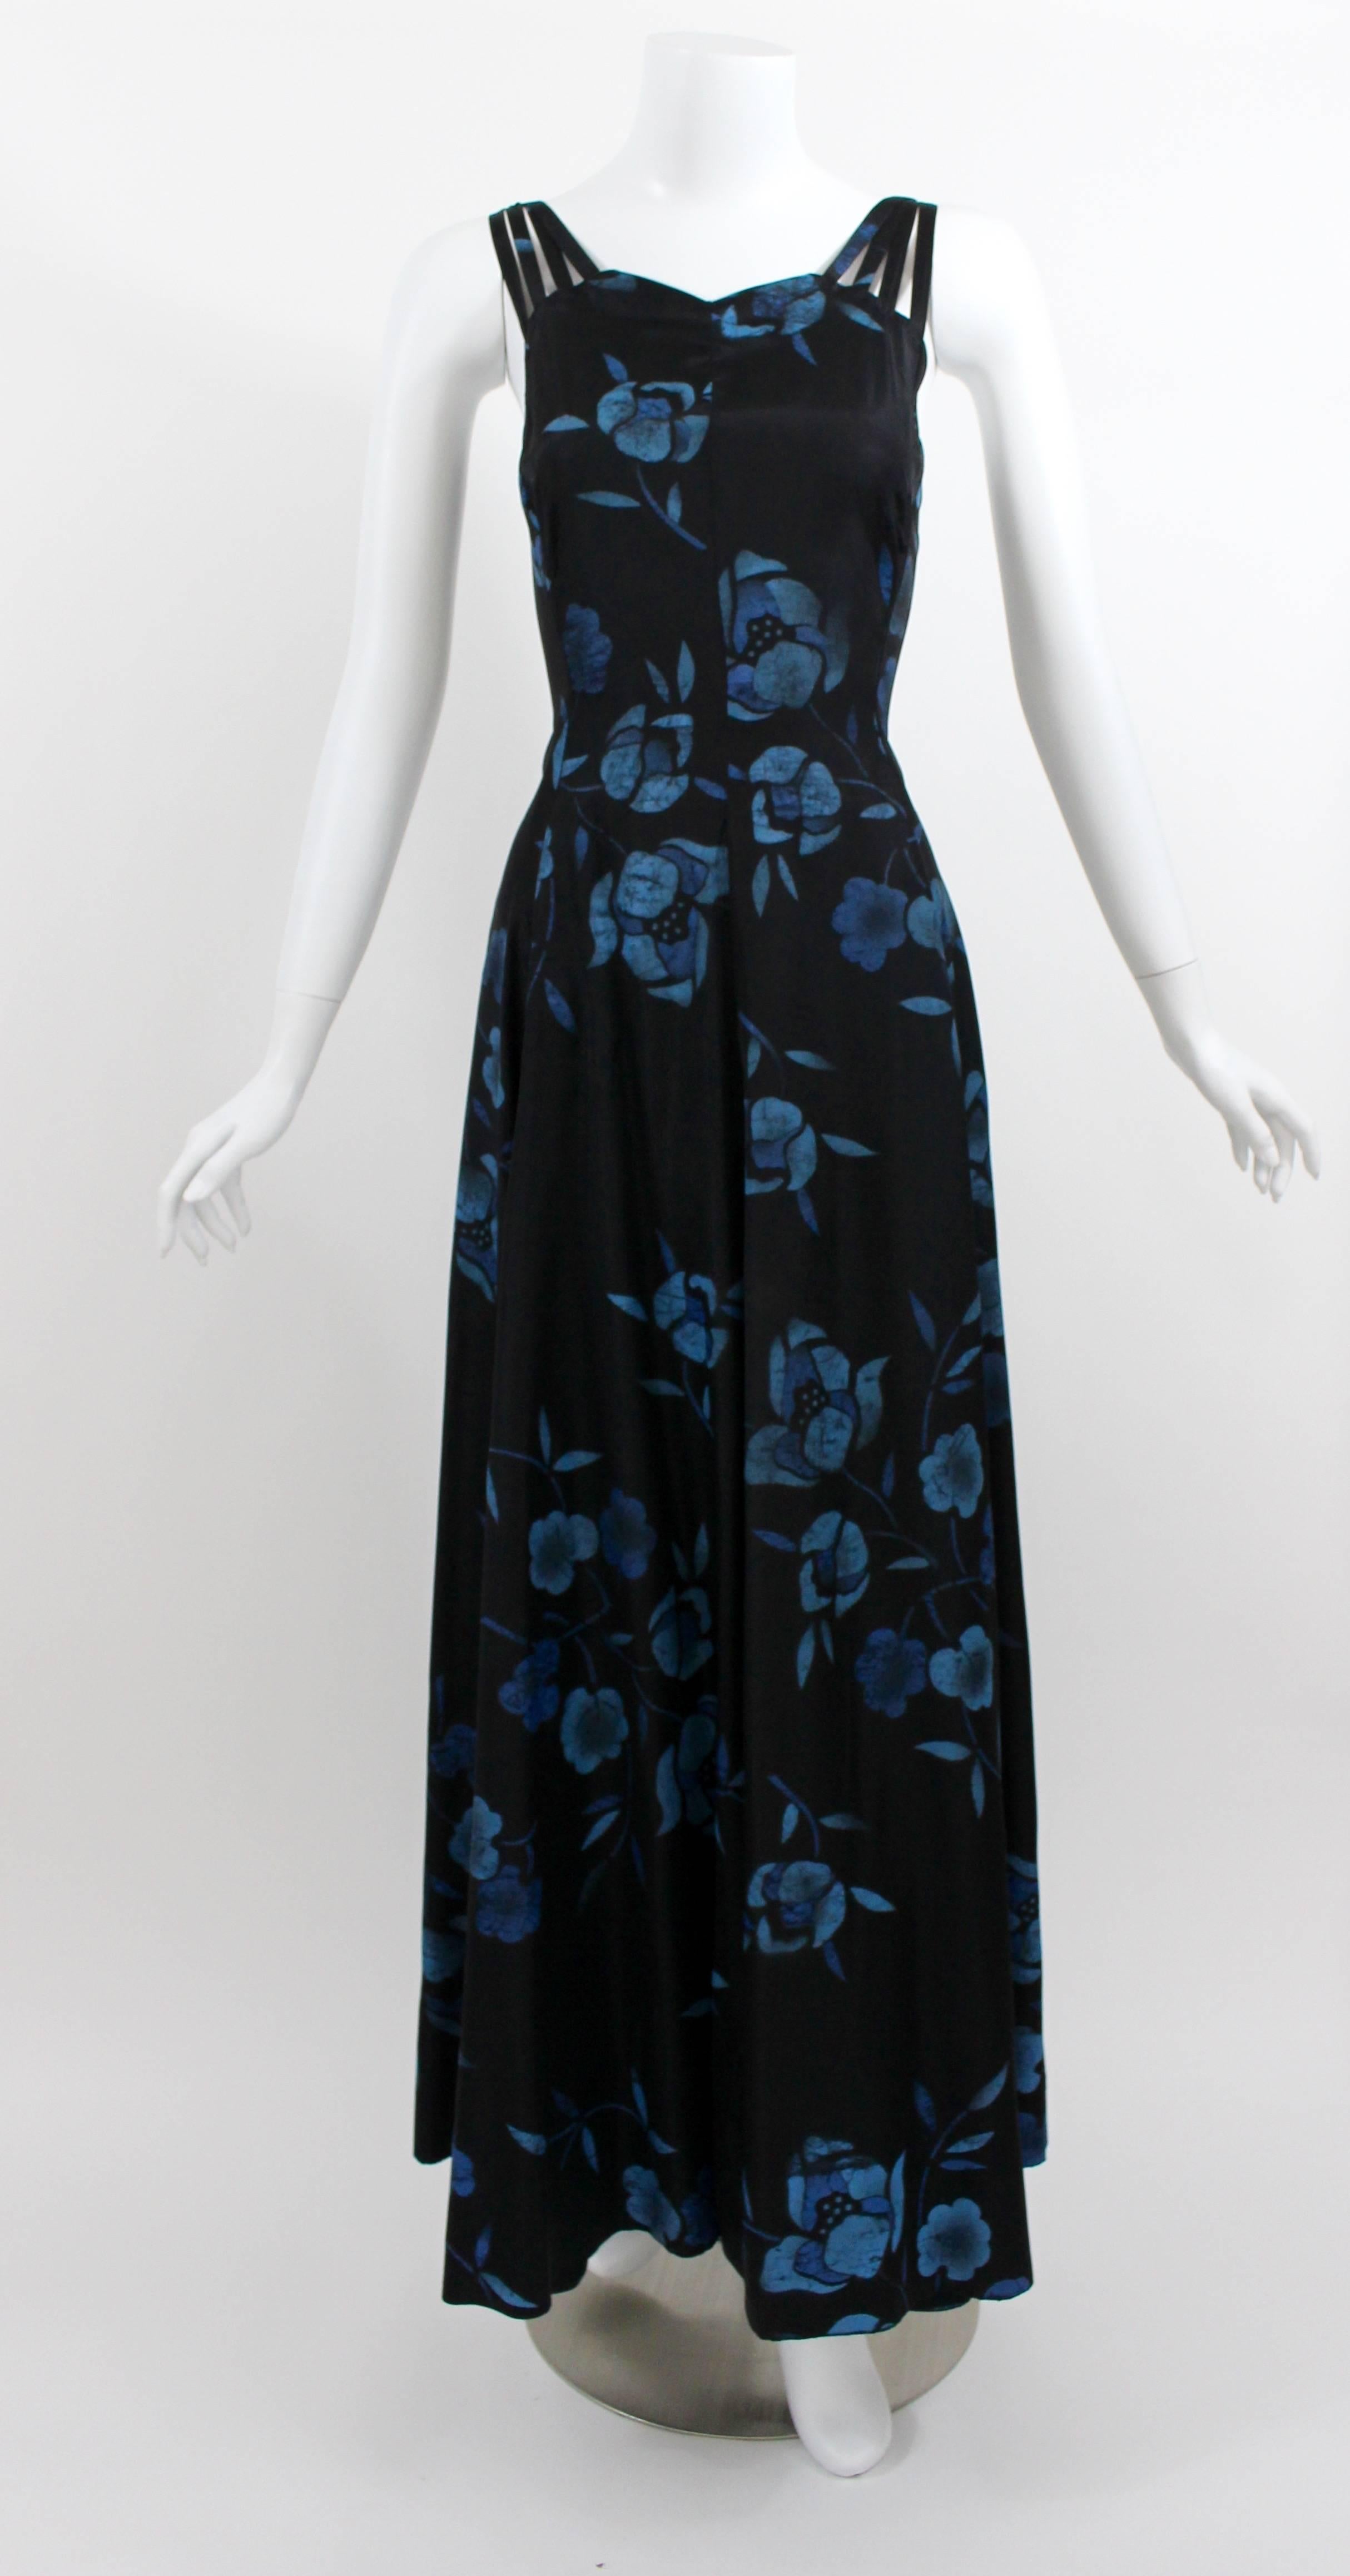 Une superbe robe longue en taffetas des années 1930. J'adore l'imprimé floral batik bleu sur fond noir. Les multiples sangles fines de  Les épaules et le milieu du dos sont sexy et féminins. Une taille ajustée et une jupe longue et ample avec un